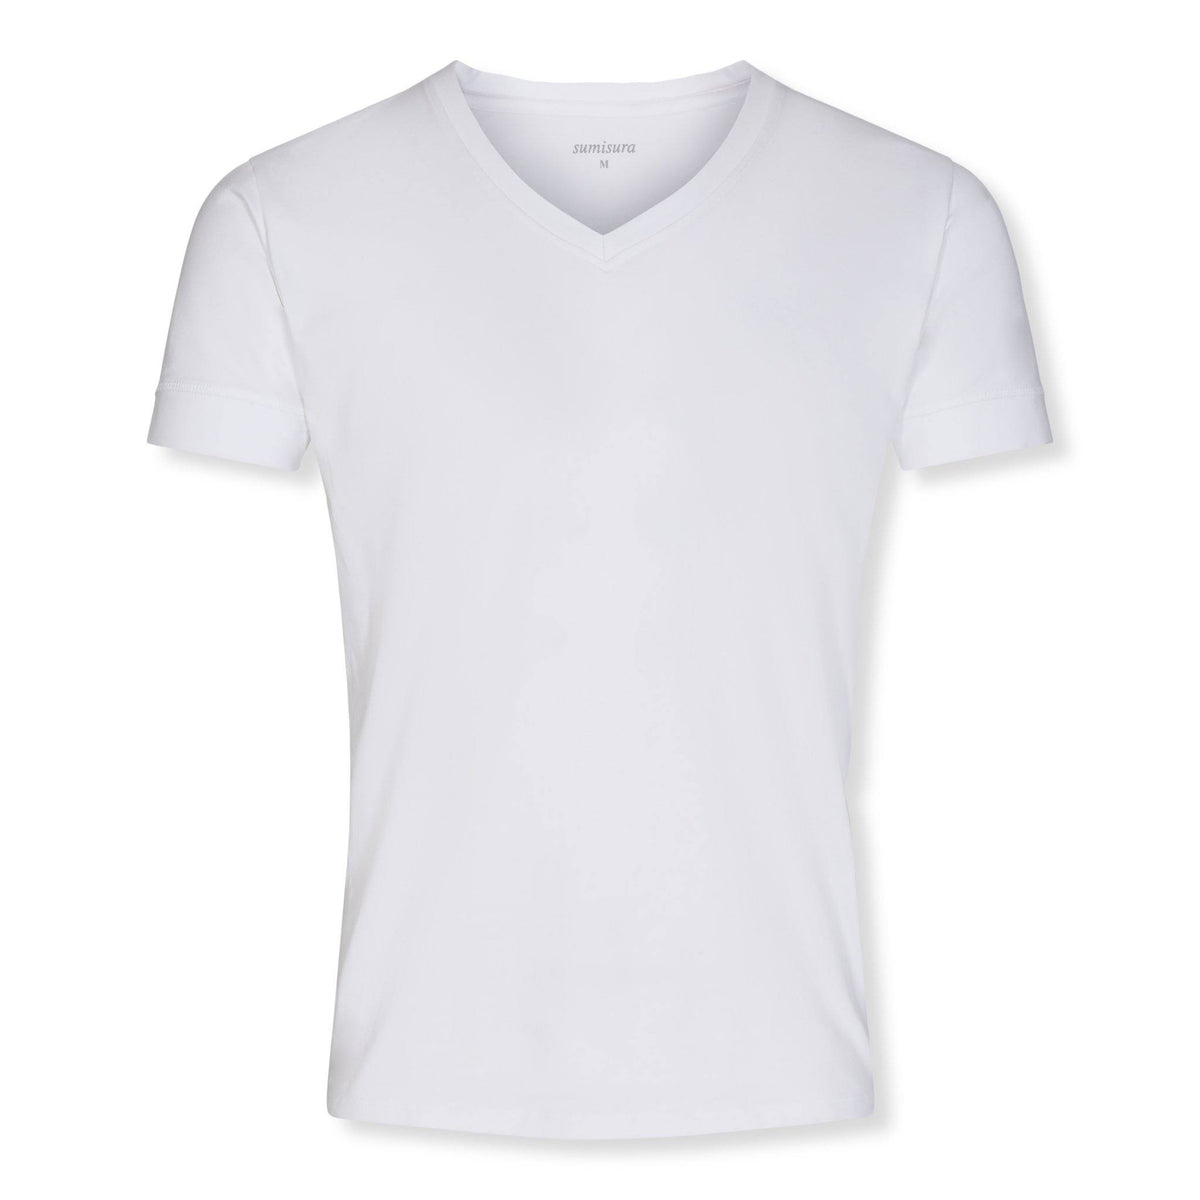 Florence – White V-Neck – T-Shirts – Sumisura